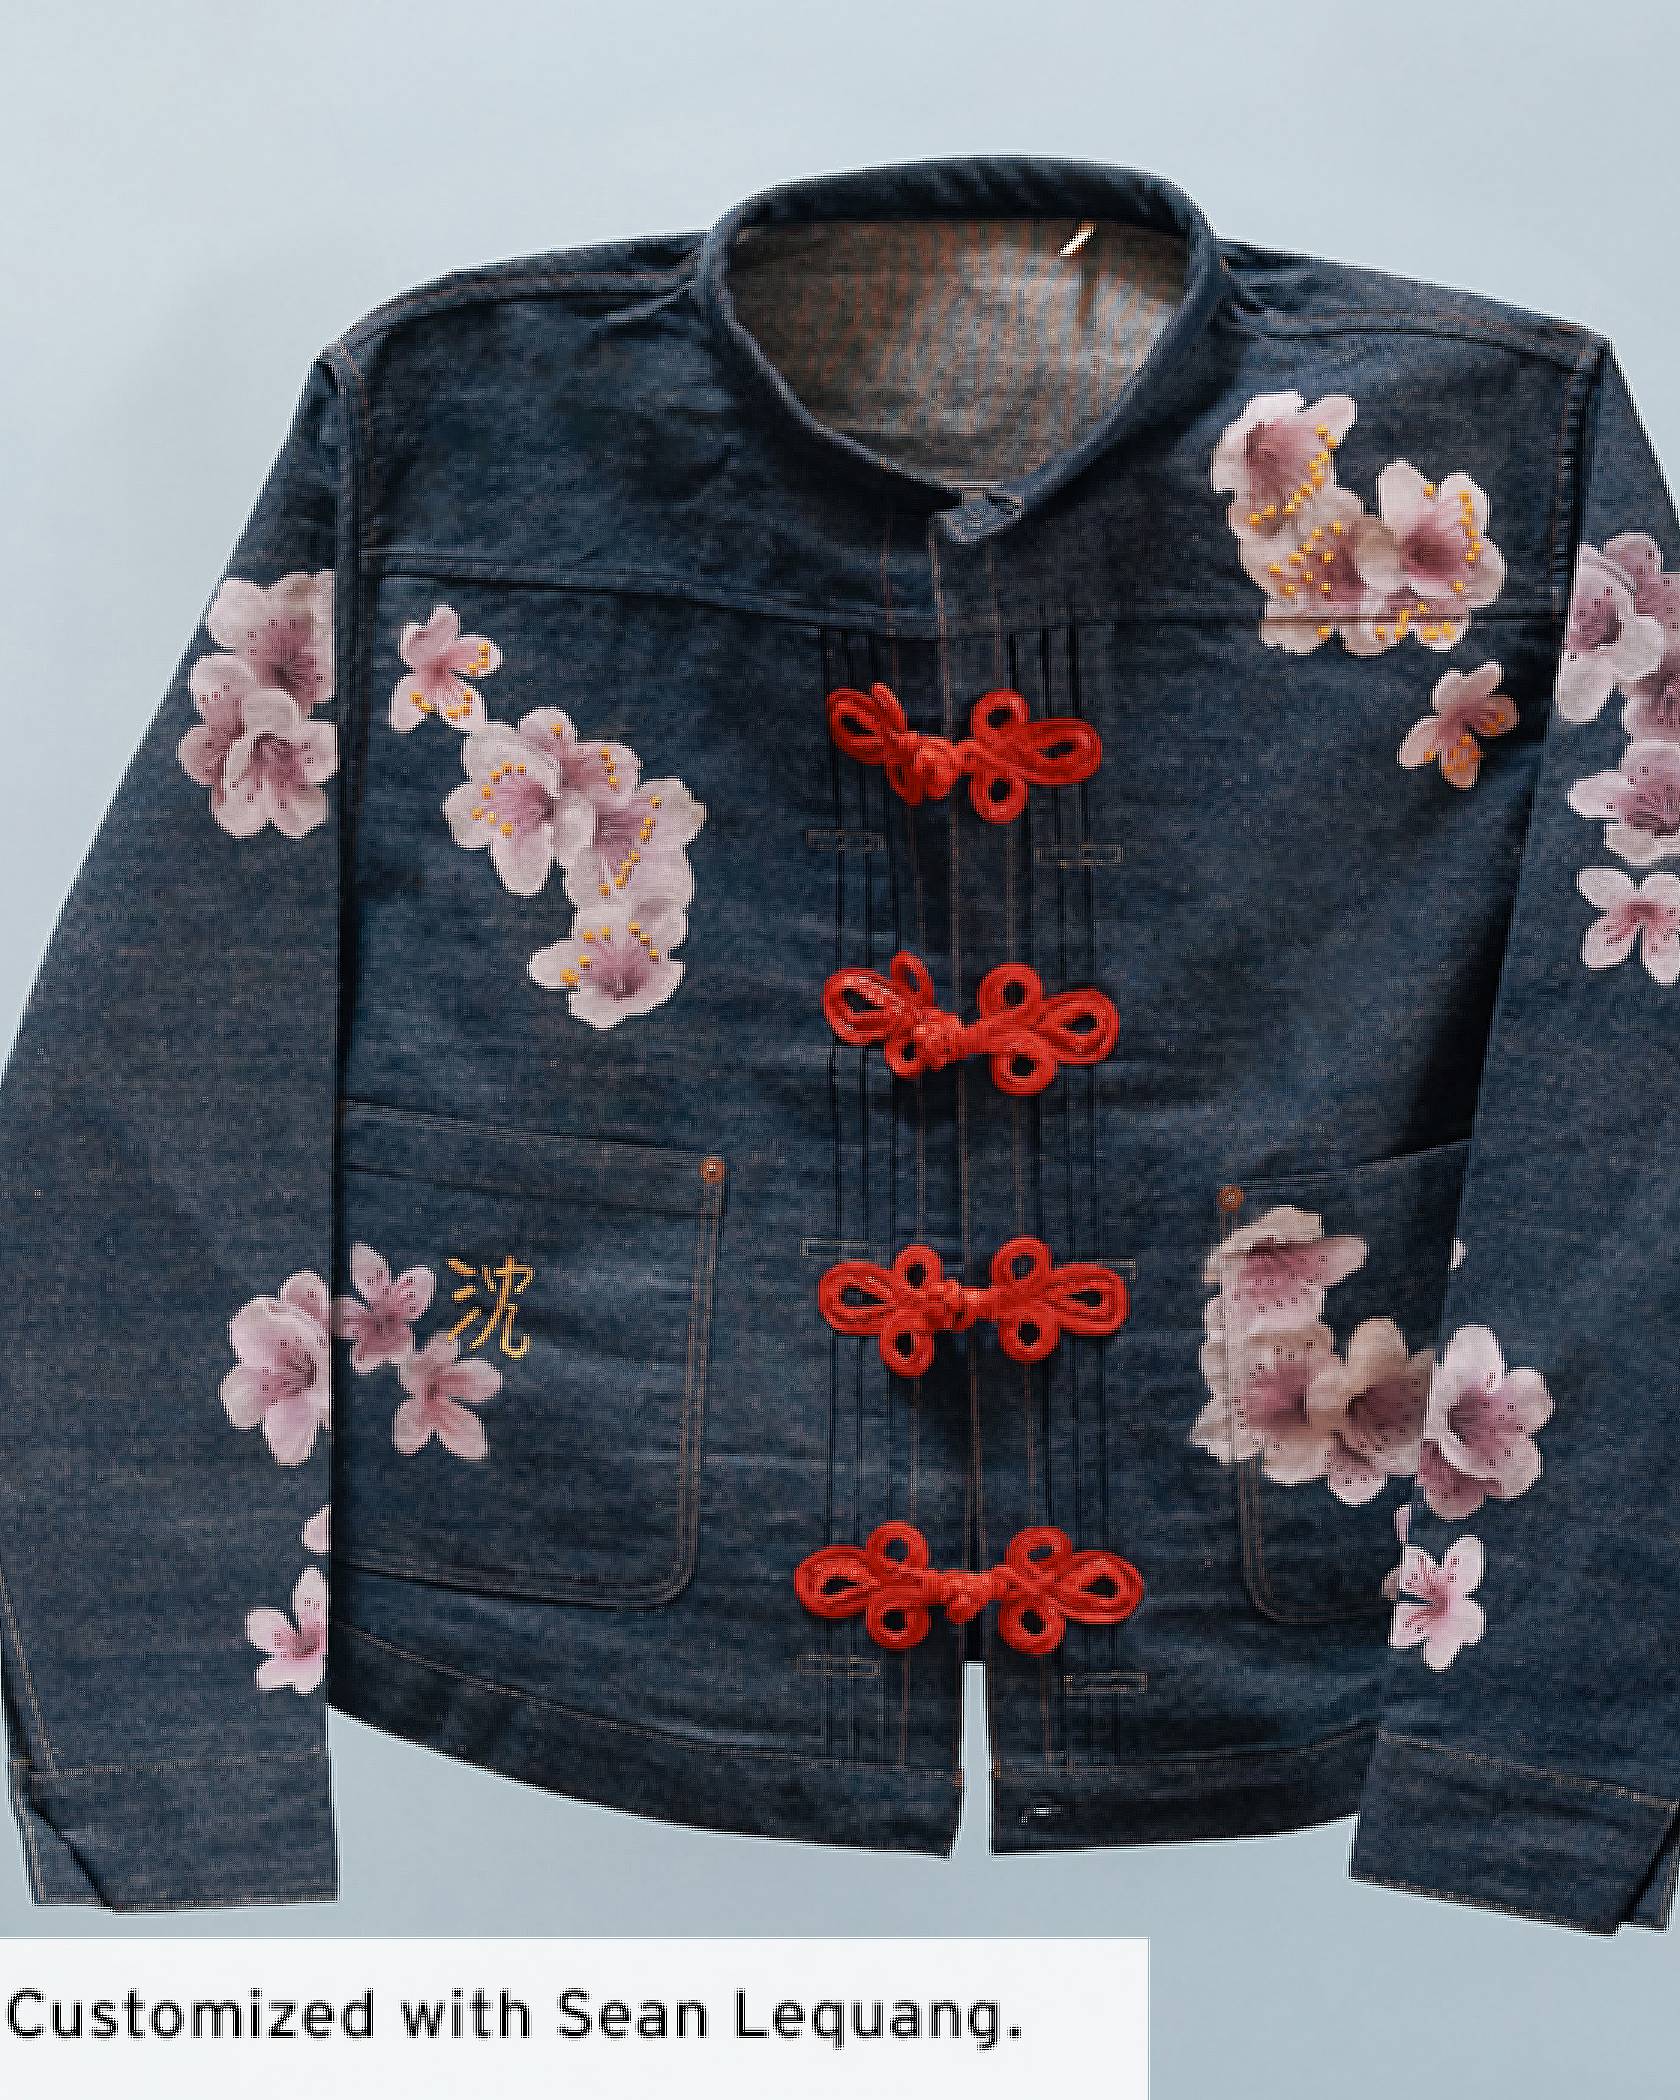 A custom trucker jacket with flowers on it